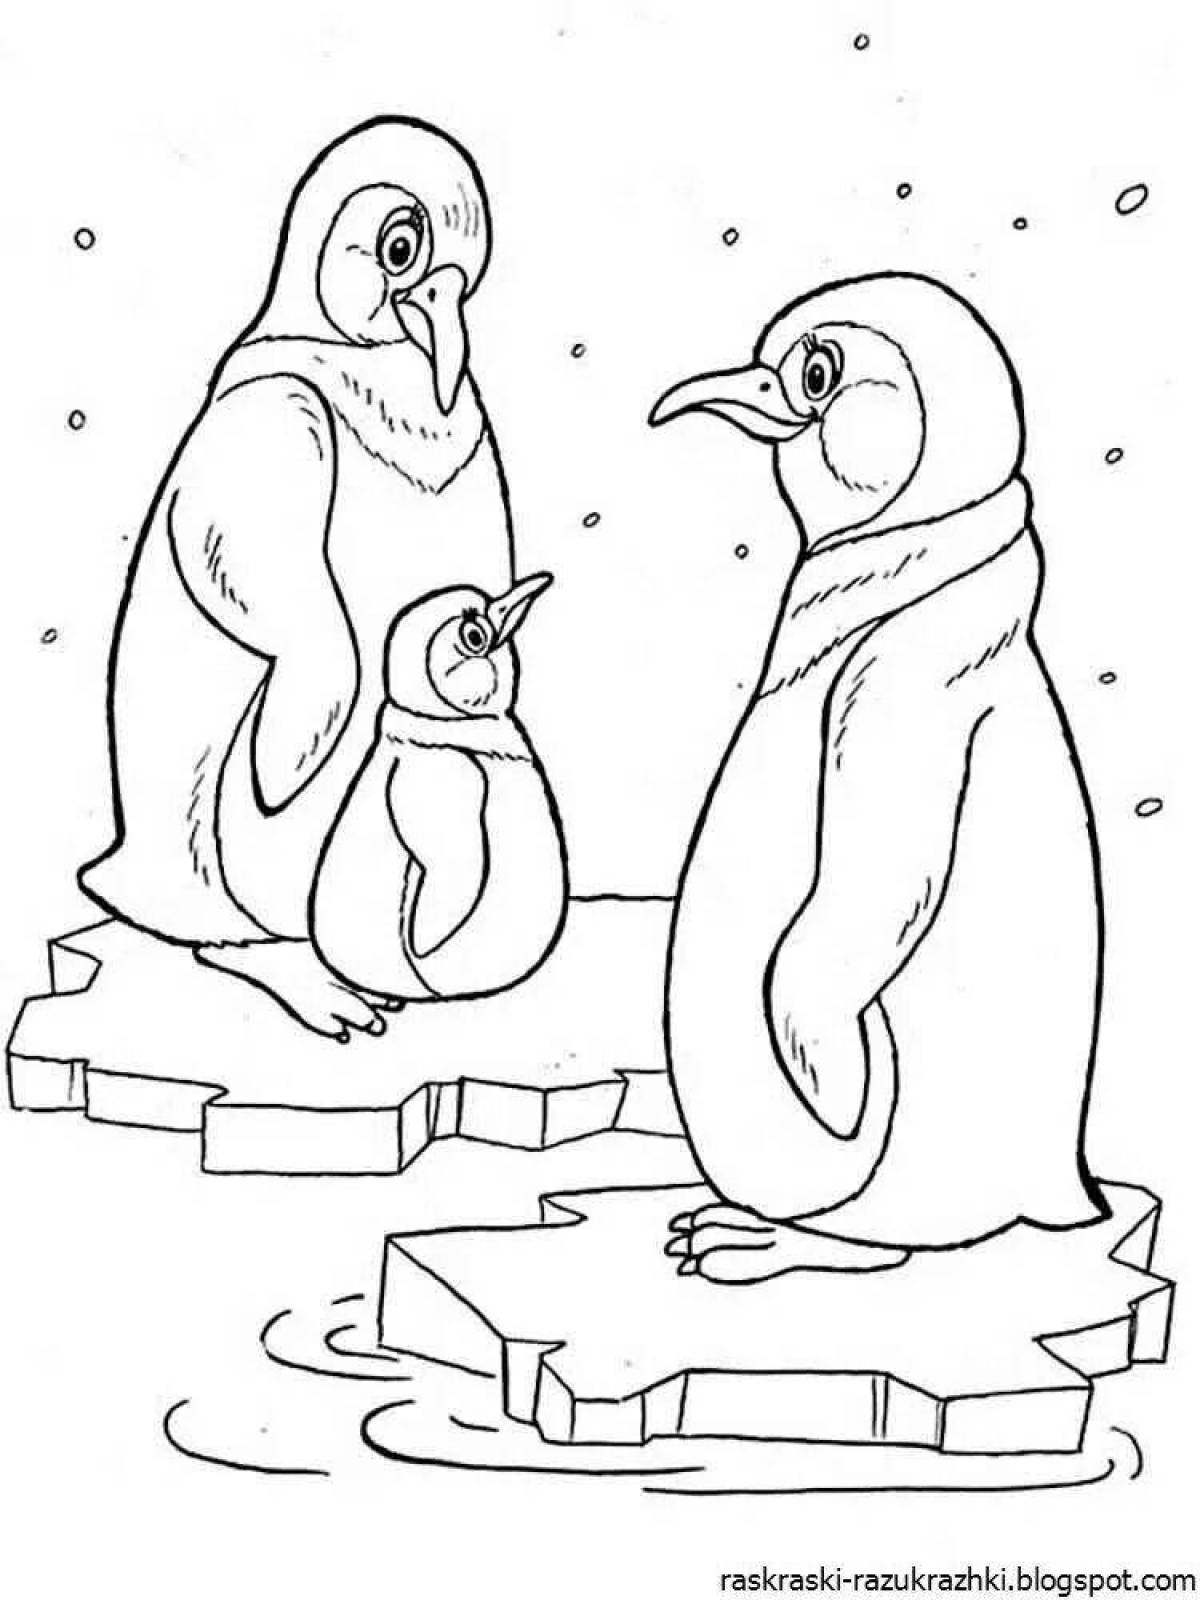 Цветная раскраска пингвинов для детей